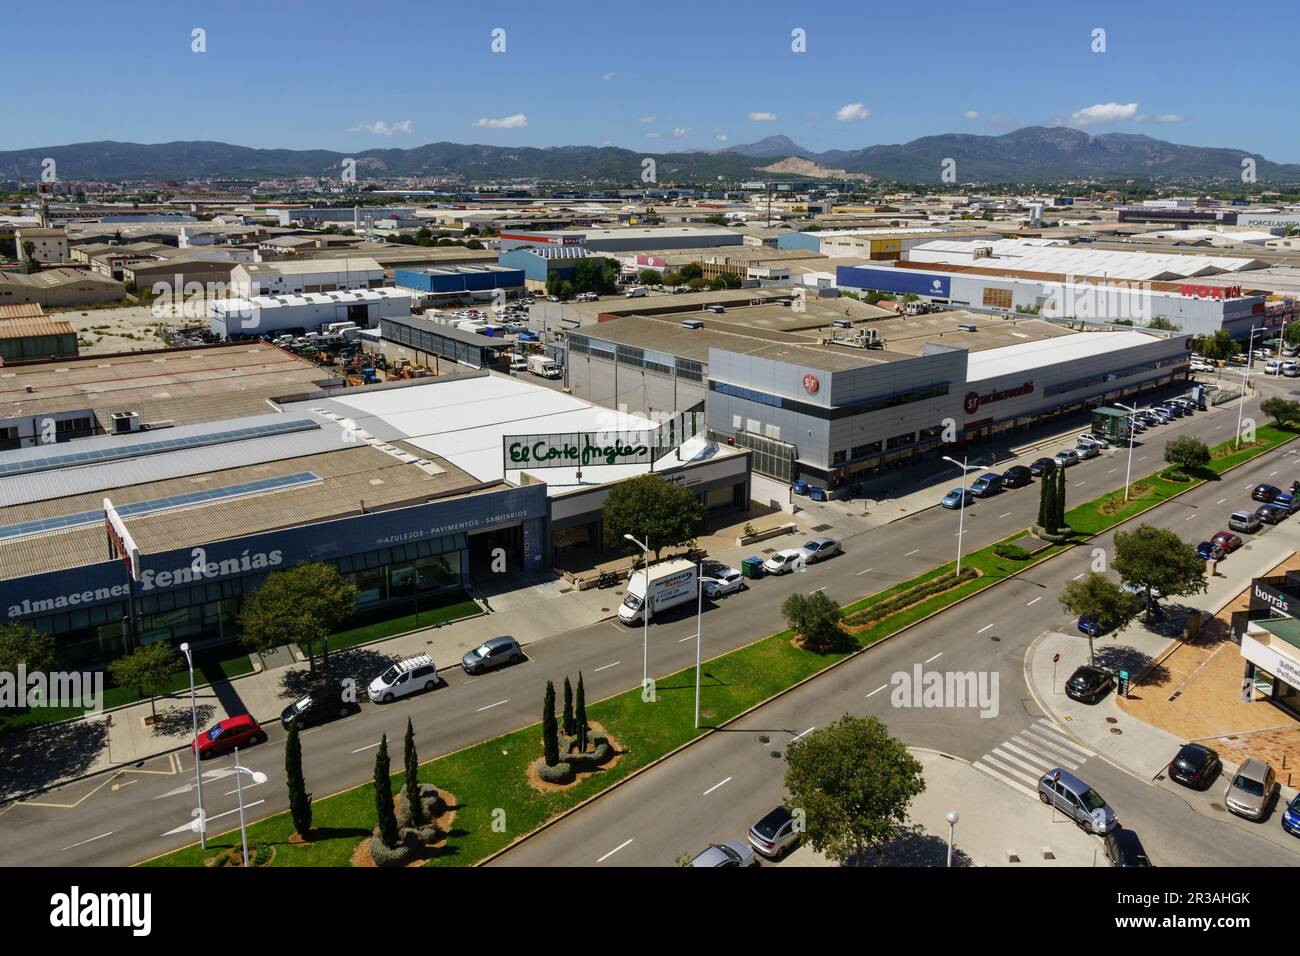 poligono industrial de Son Castello, Palma, Mallorca, balearic islands, spain, europe. Stock Photo